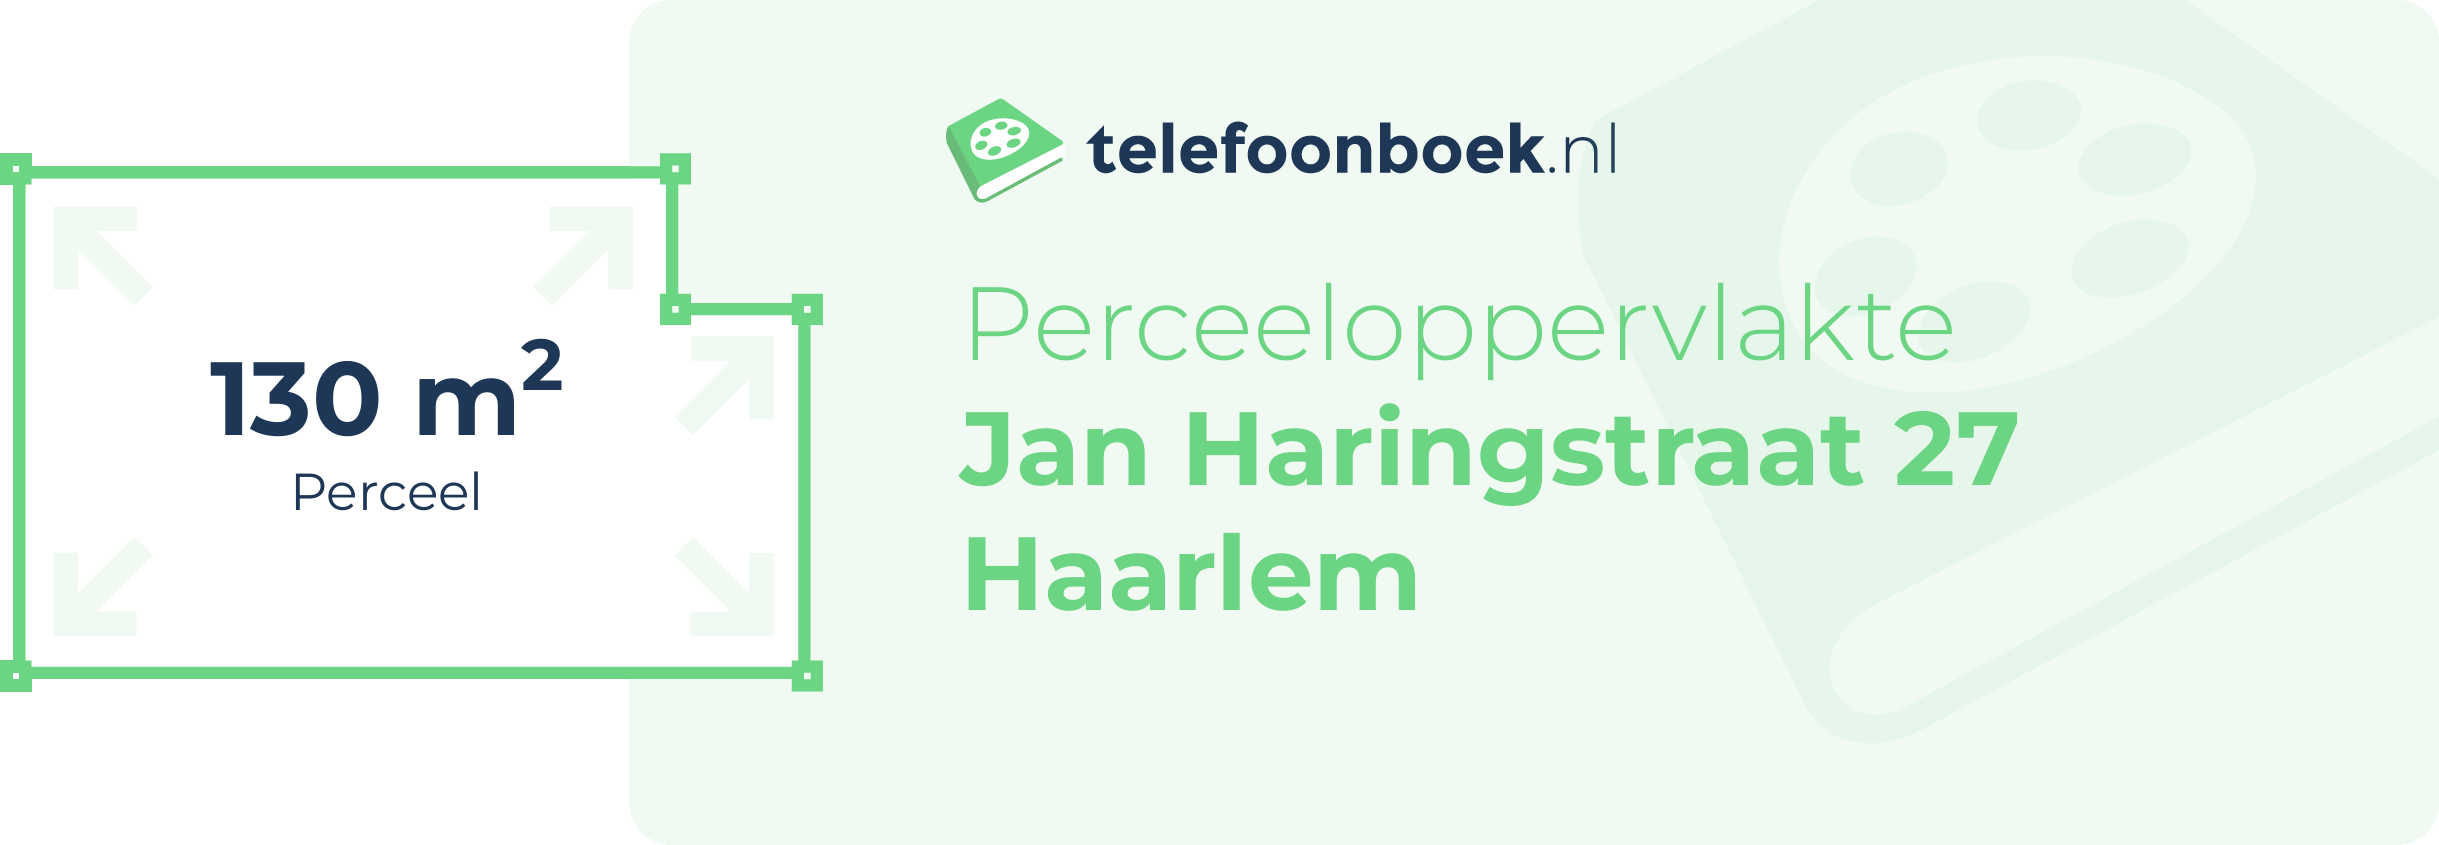 Perceeloppervlakte Jan Haringstraat 27 Haarlem